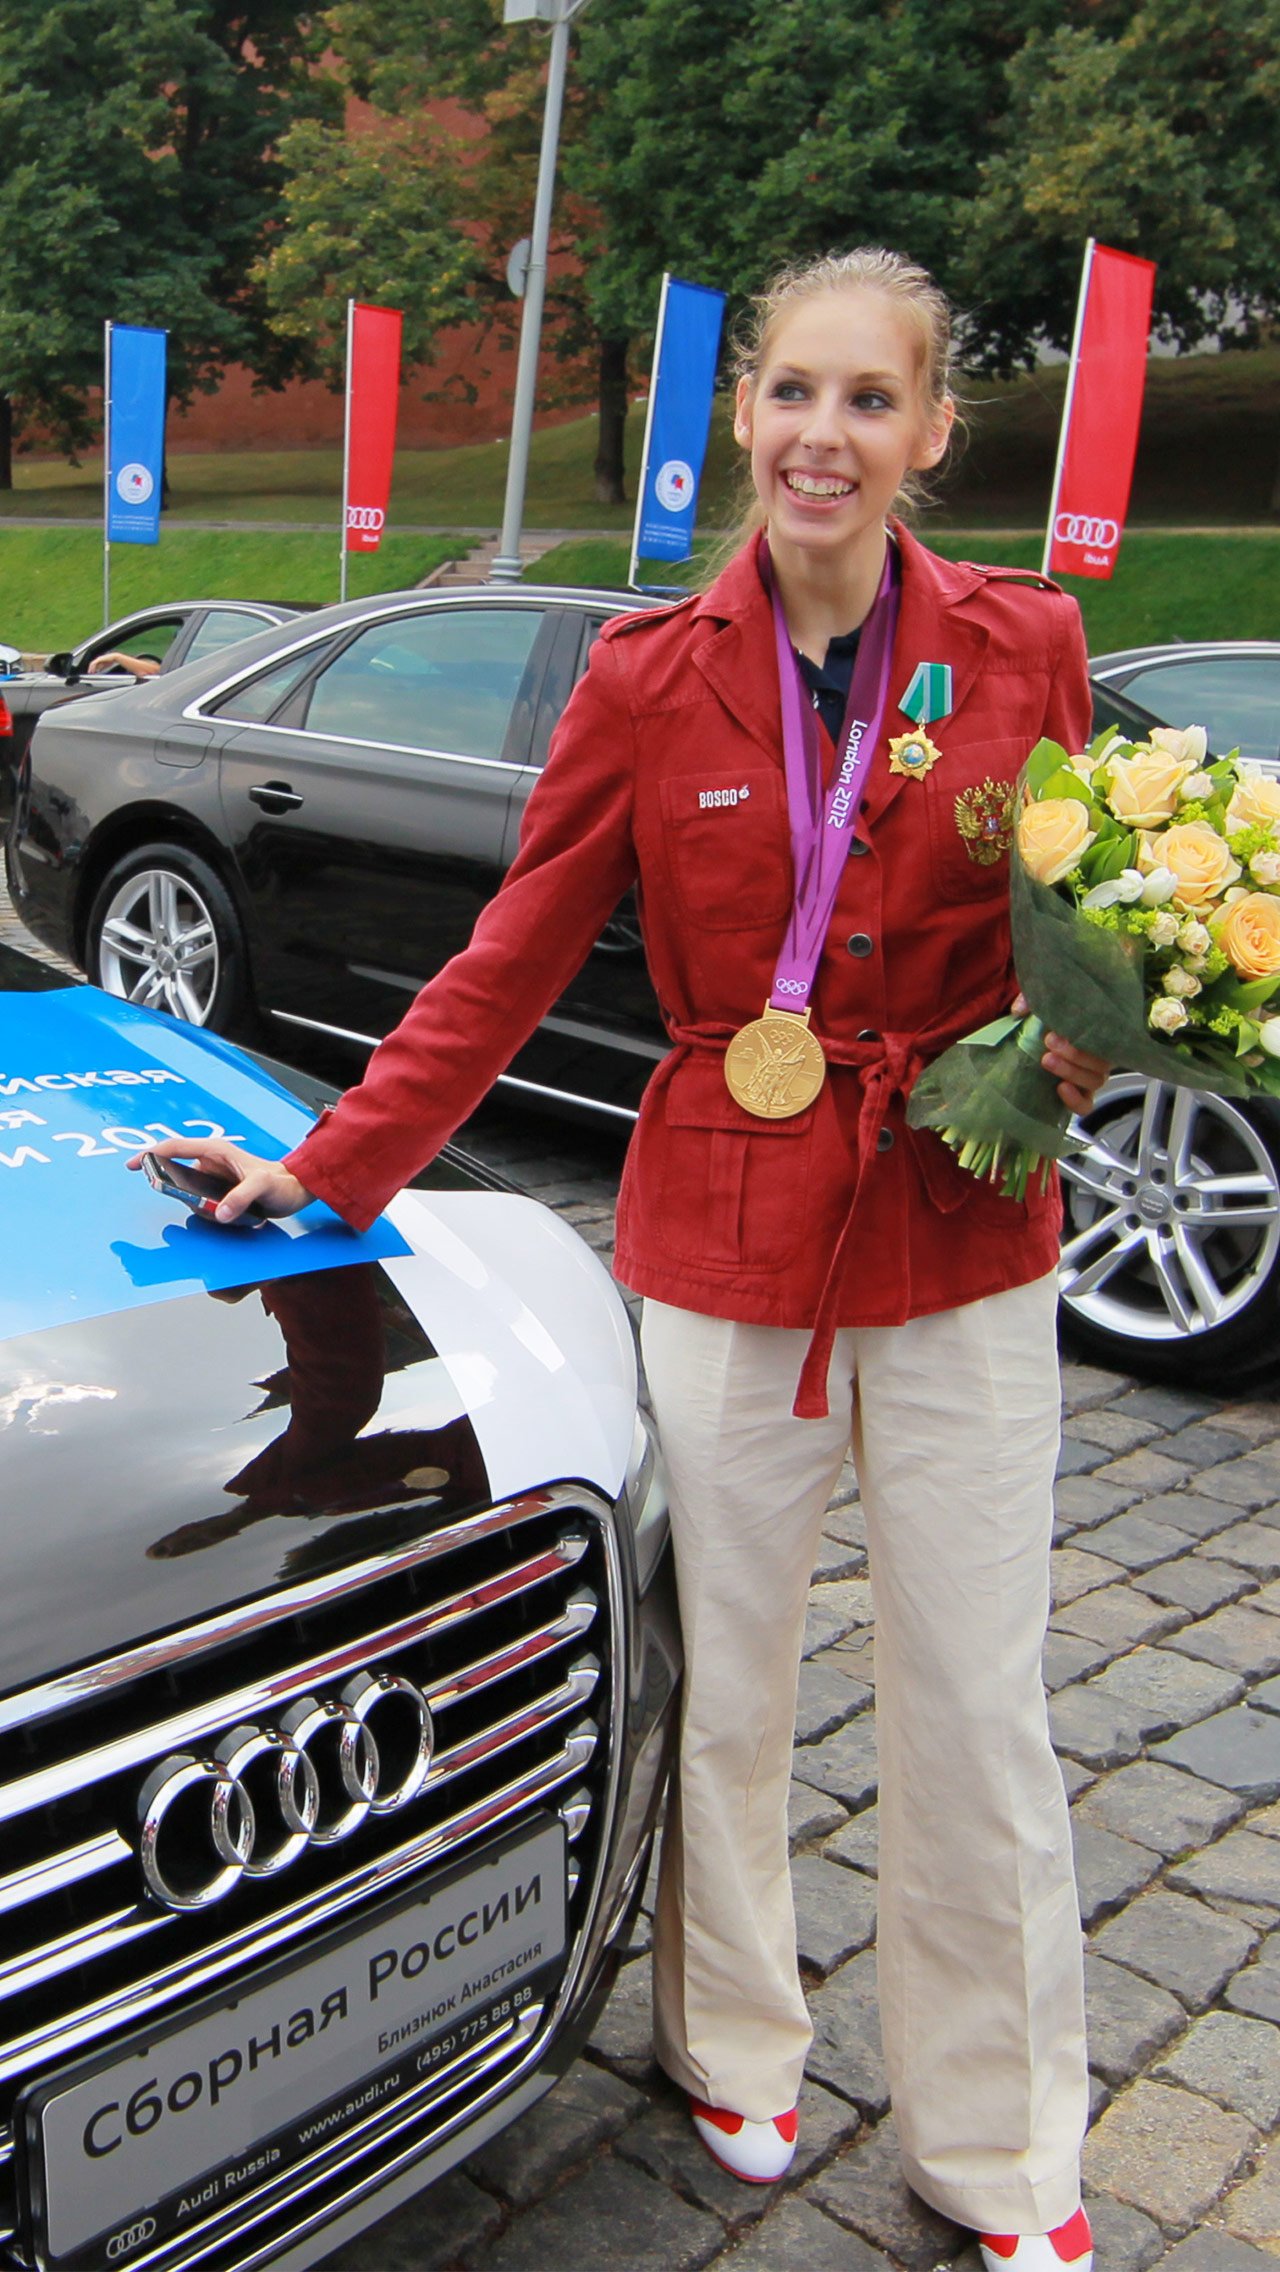 После Олимпиад в 2010 и 2012 году спортсменам подарили Audi. В 2014 призёры получили Mercedes-Benz, в 2016 и 2018 российским атлетам вручили ключи от BMW.